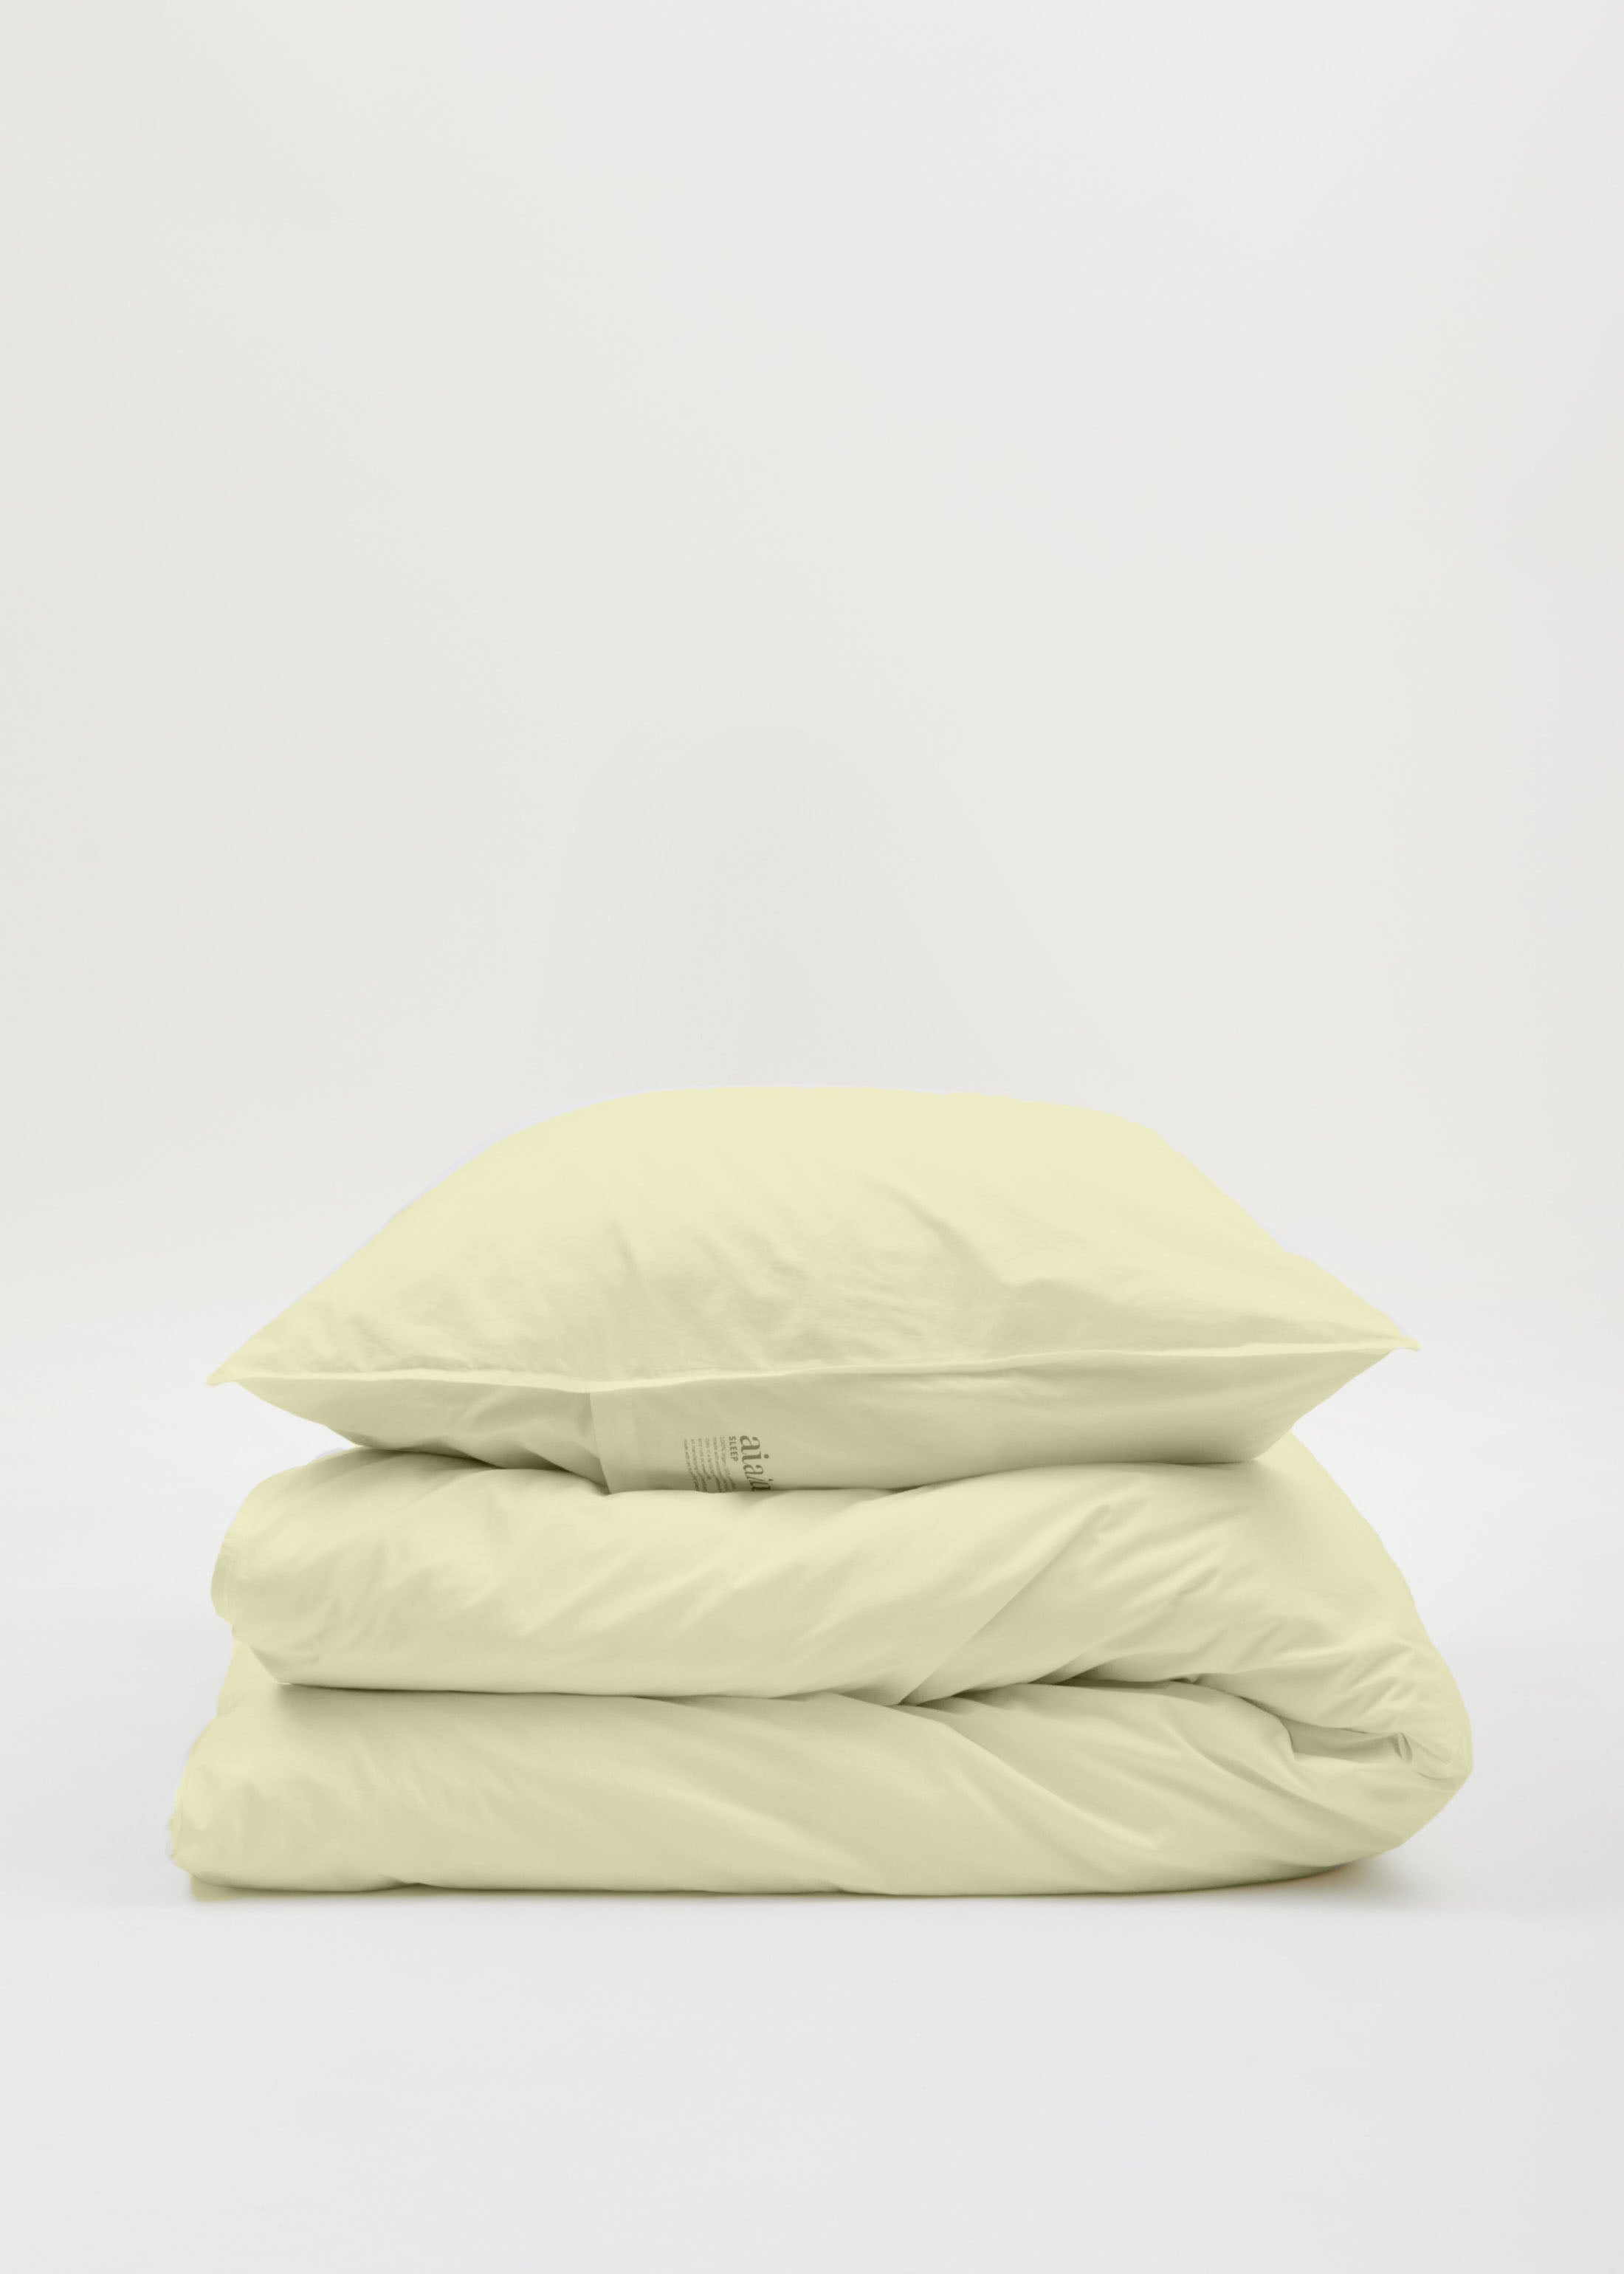 Duvet set & pillow case - limone | Limone